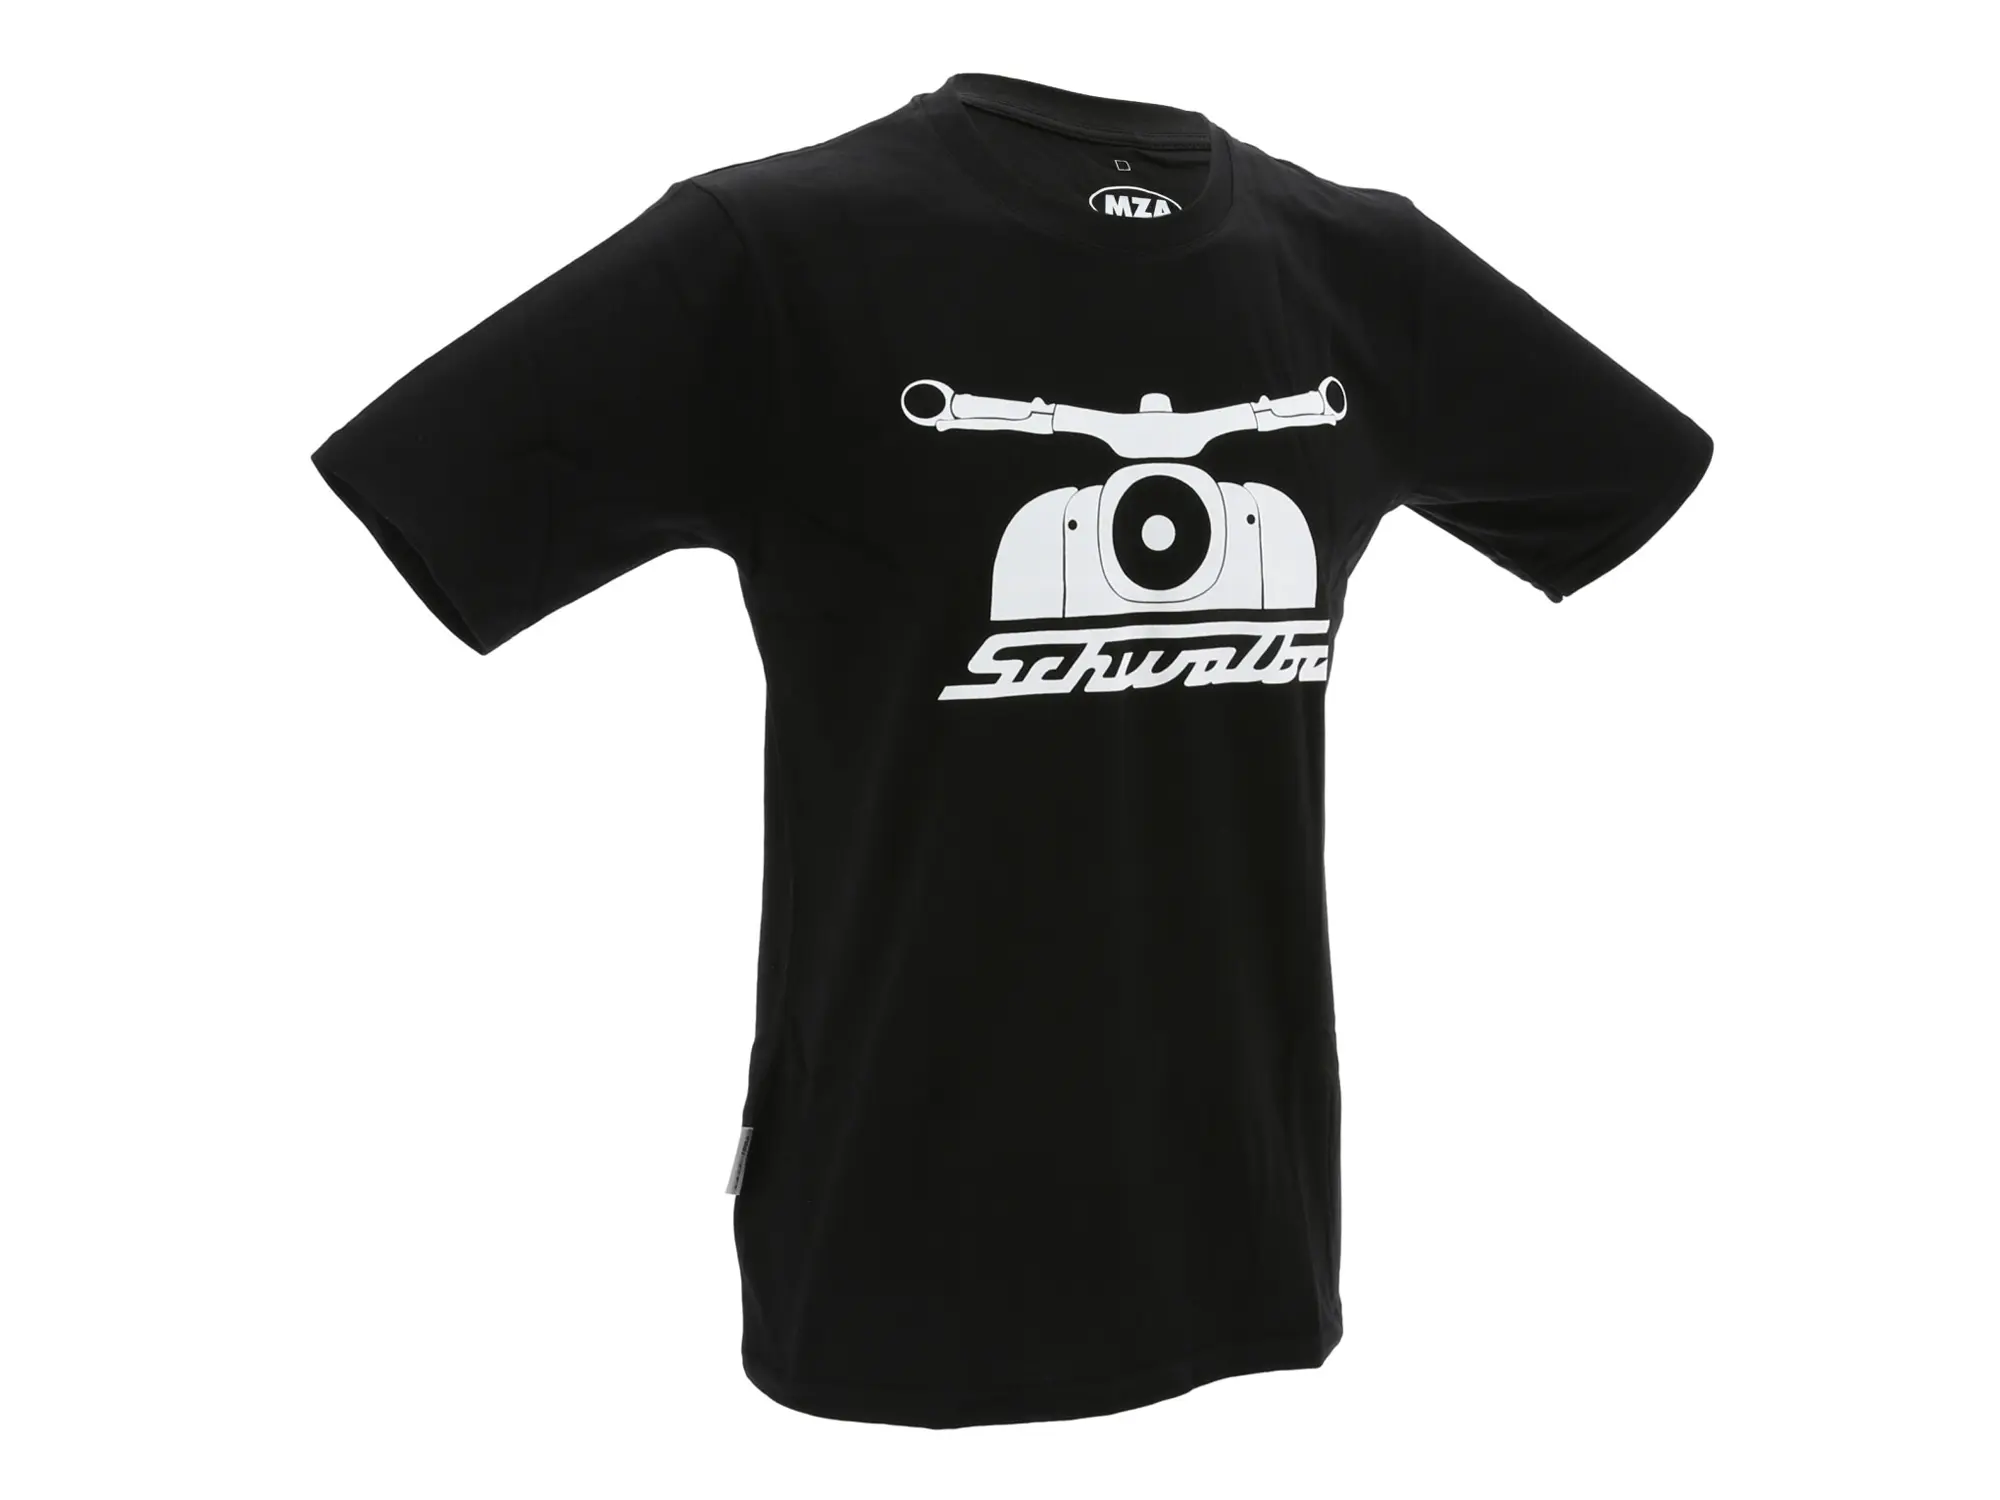 T-Shirt "Schwalbe seit 1964" - Schwarz, Art.-Nr.: 10072493 - Bild 1